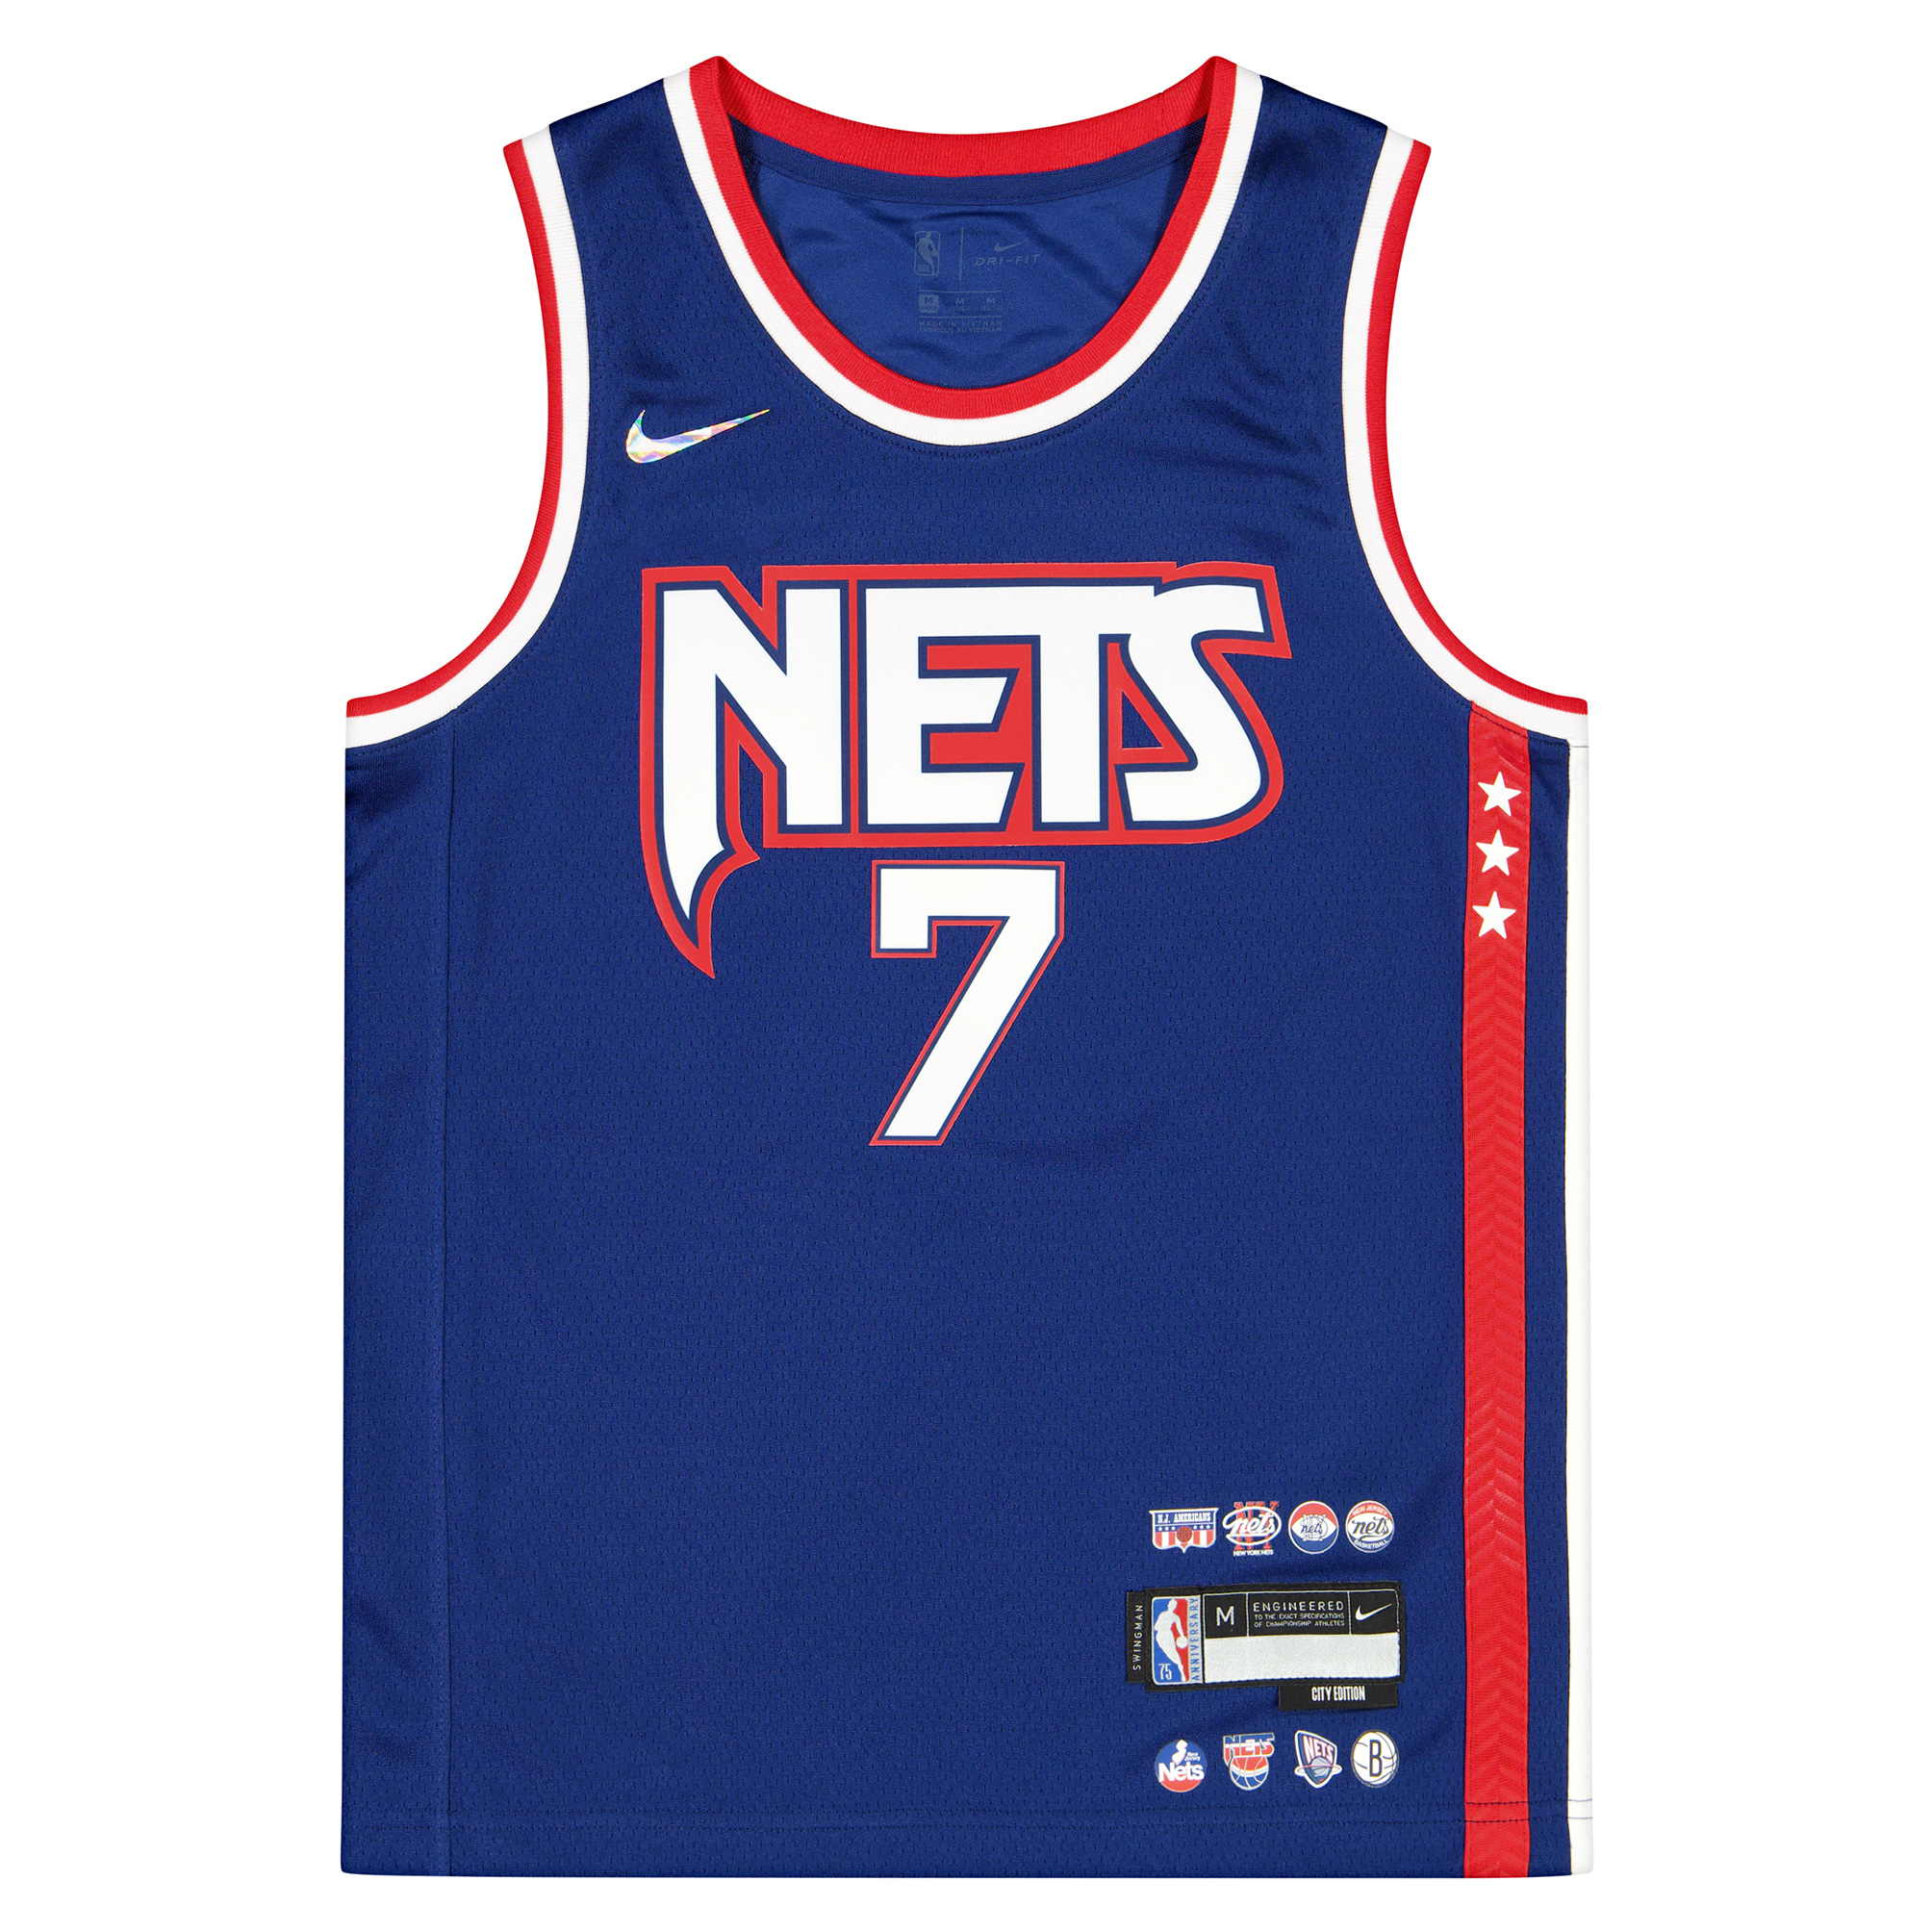 Nike Kids Nba Swingman Jersey Mixtape Kevin Durant Brooklyn Nets Kids, Brooklyn Nets - Kevin Durant